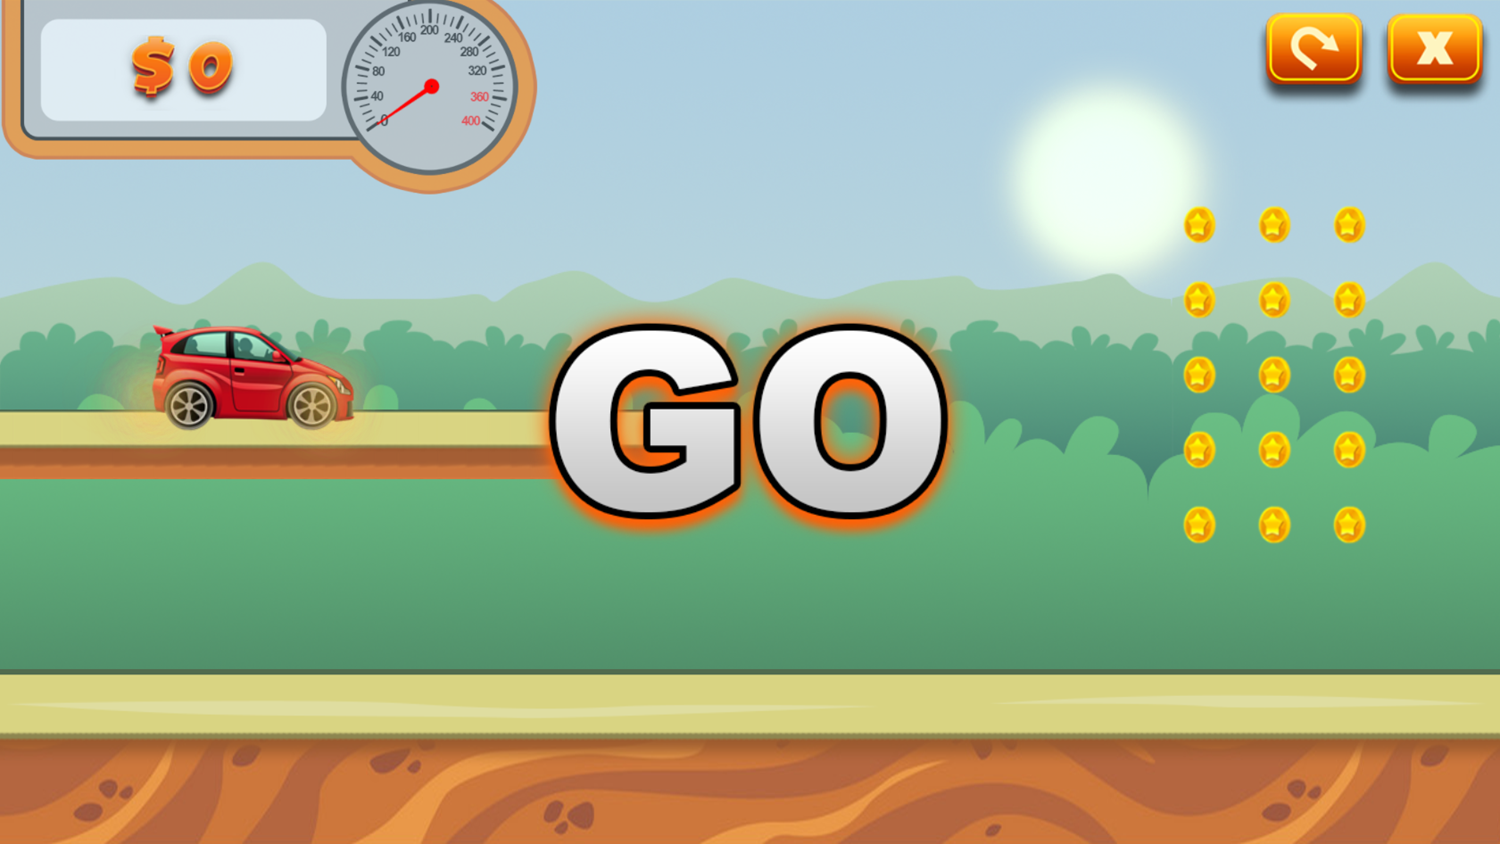 Fun Racer Drawing Path Game Level Start Screenshot.